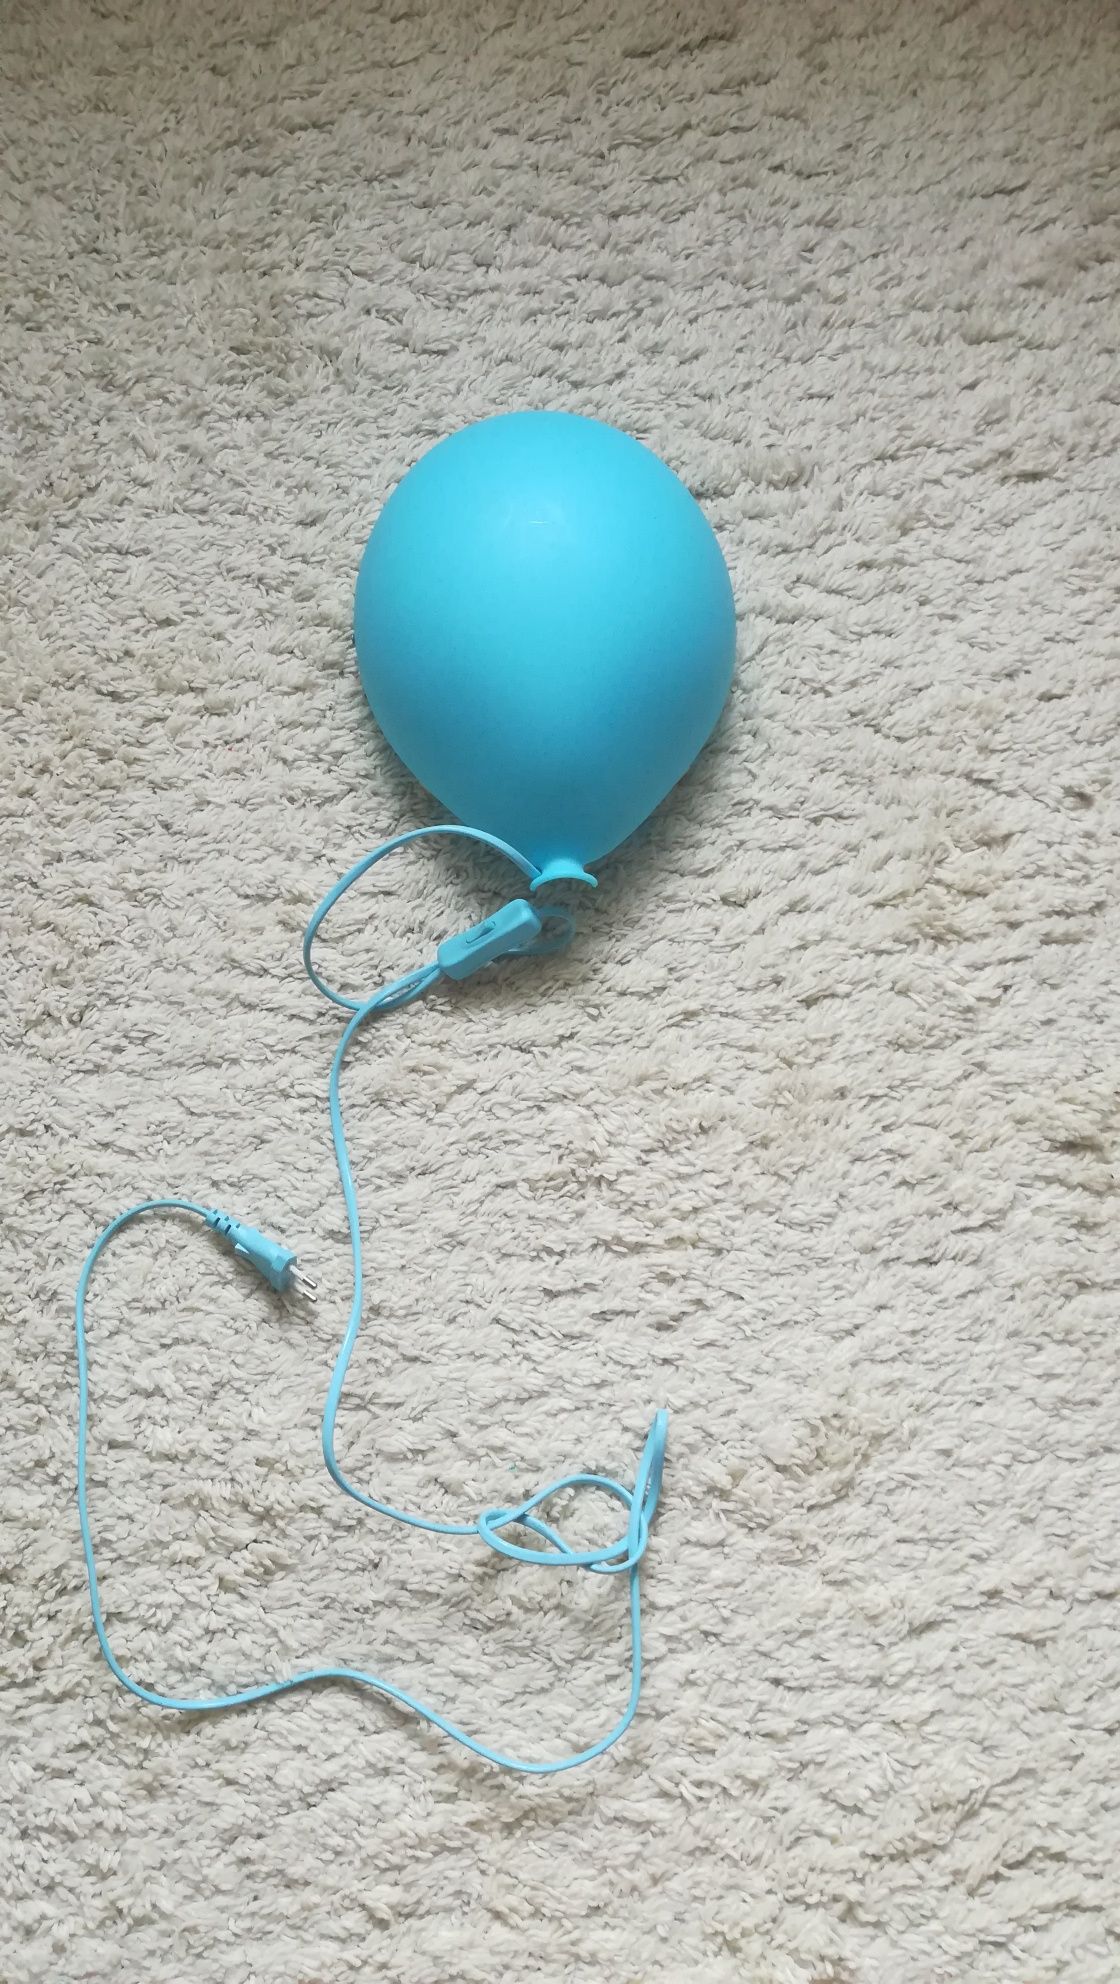 Ikea lampa balon